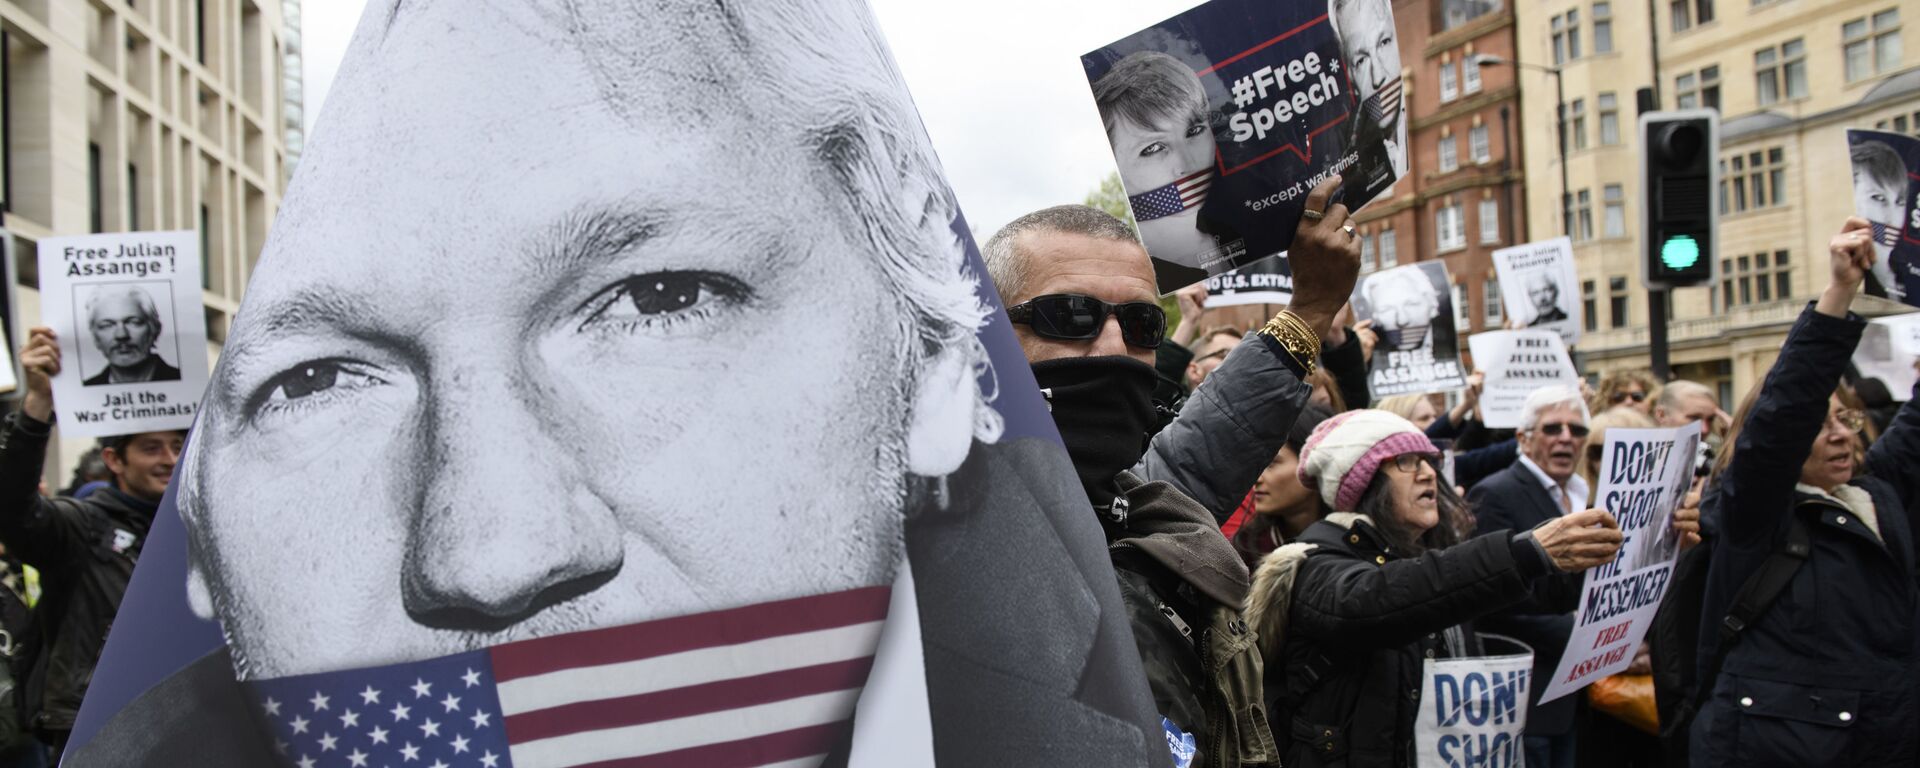 Присталице оснивача Викиликса Џулијана Асанжа протестују против саслушања о изручењу, у Лондону, Велика Британија - Sputnik Србија, 1920, 15.12.2021